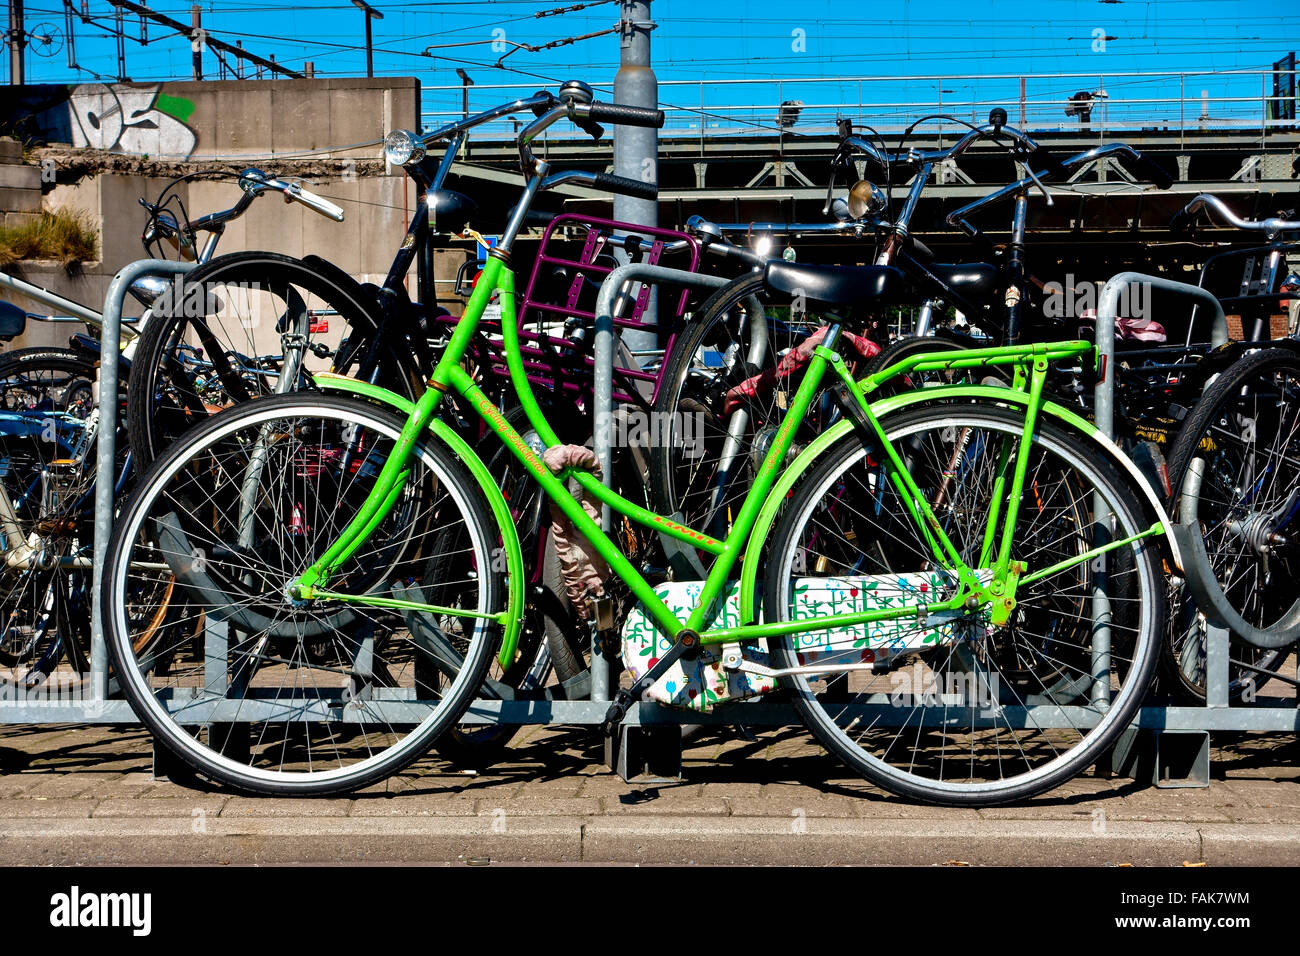 Bici verde parcheggiata vicino alla ferrovia. Amsterdam, Olanda, Paesi Bassi, Europa, UE. Cambiamento climatico, riscaldamento globale. Trasporto alternativo eco-compatibile. Foto Stock